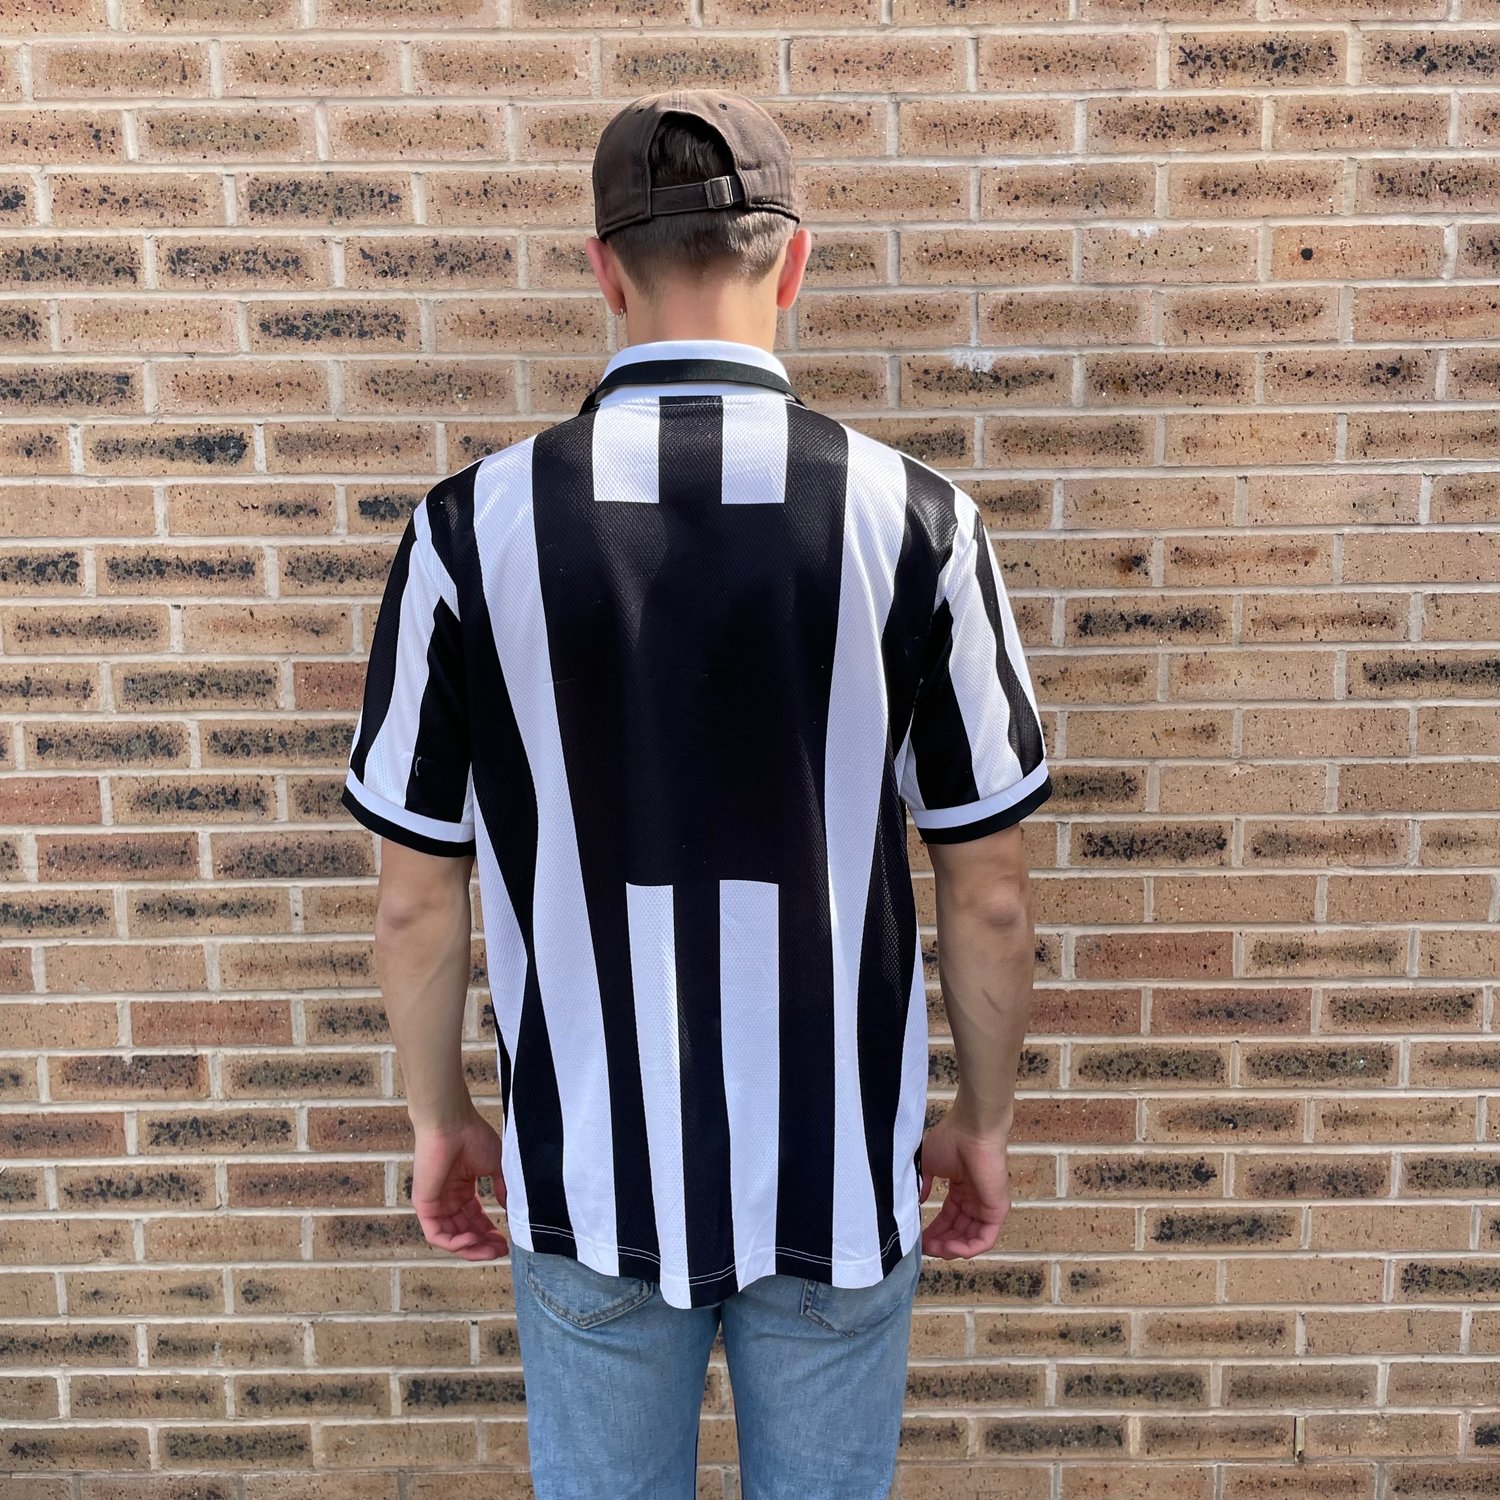 Image of 95/96 Juventus Home shirt size large 